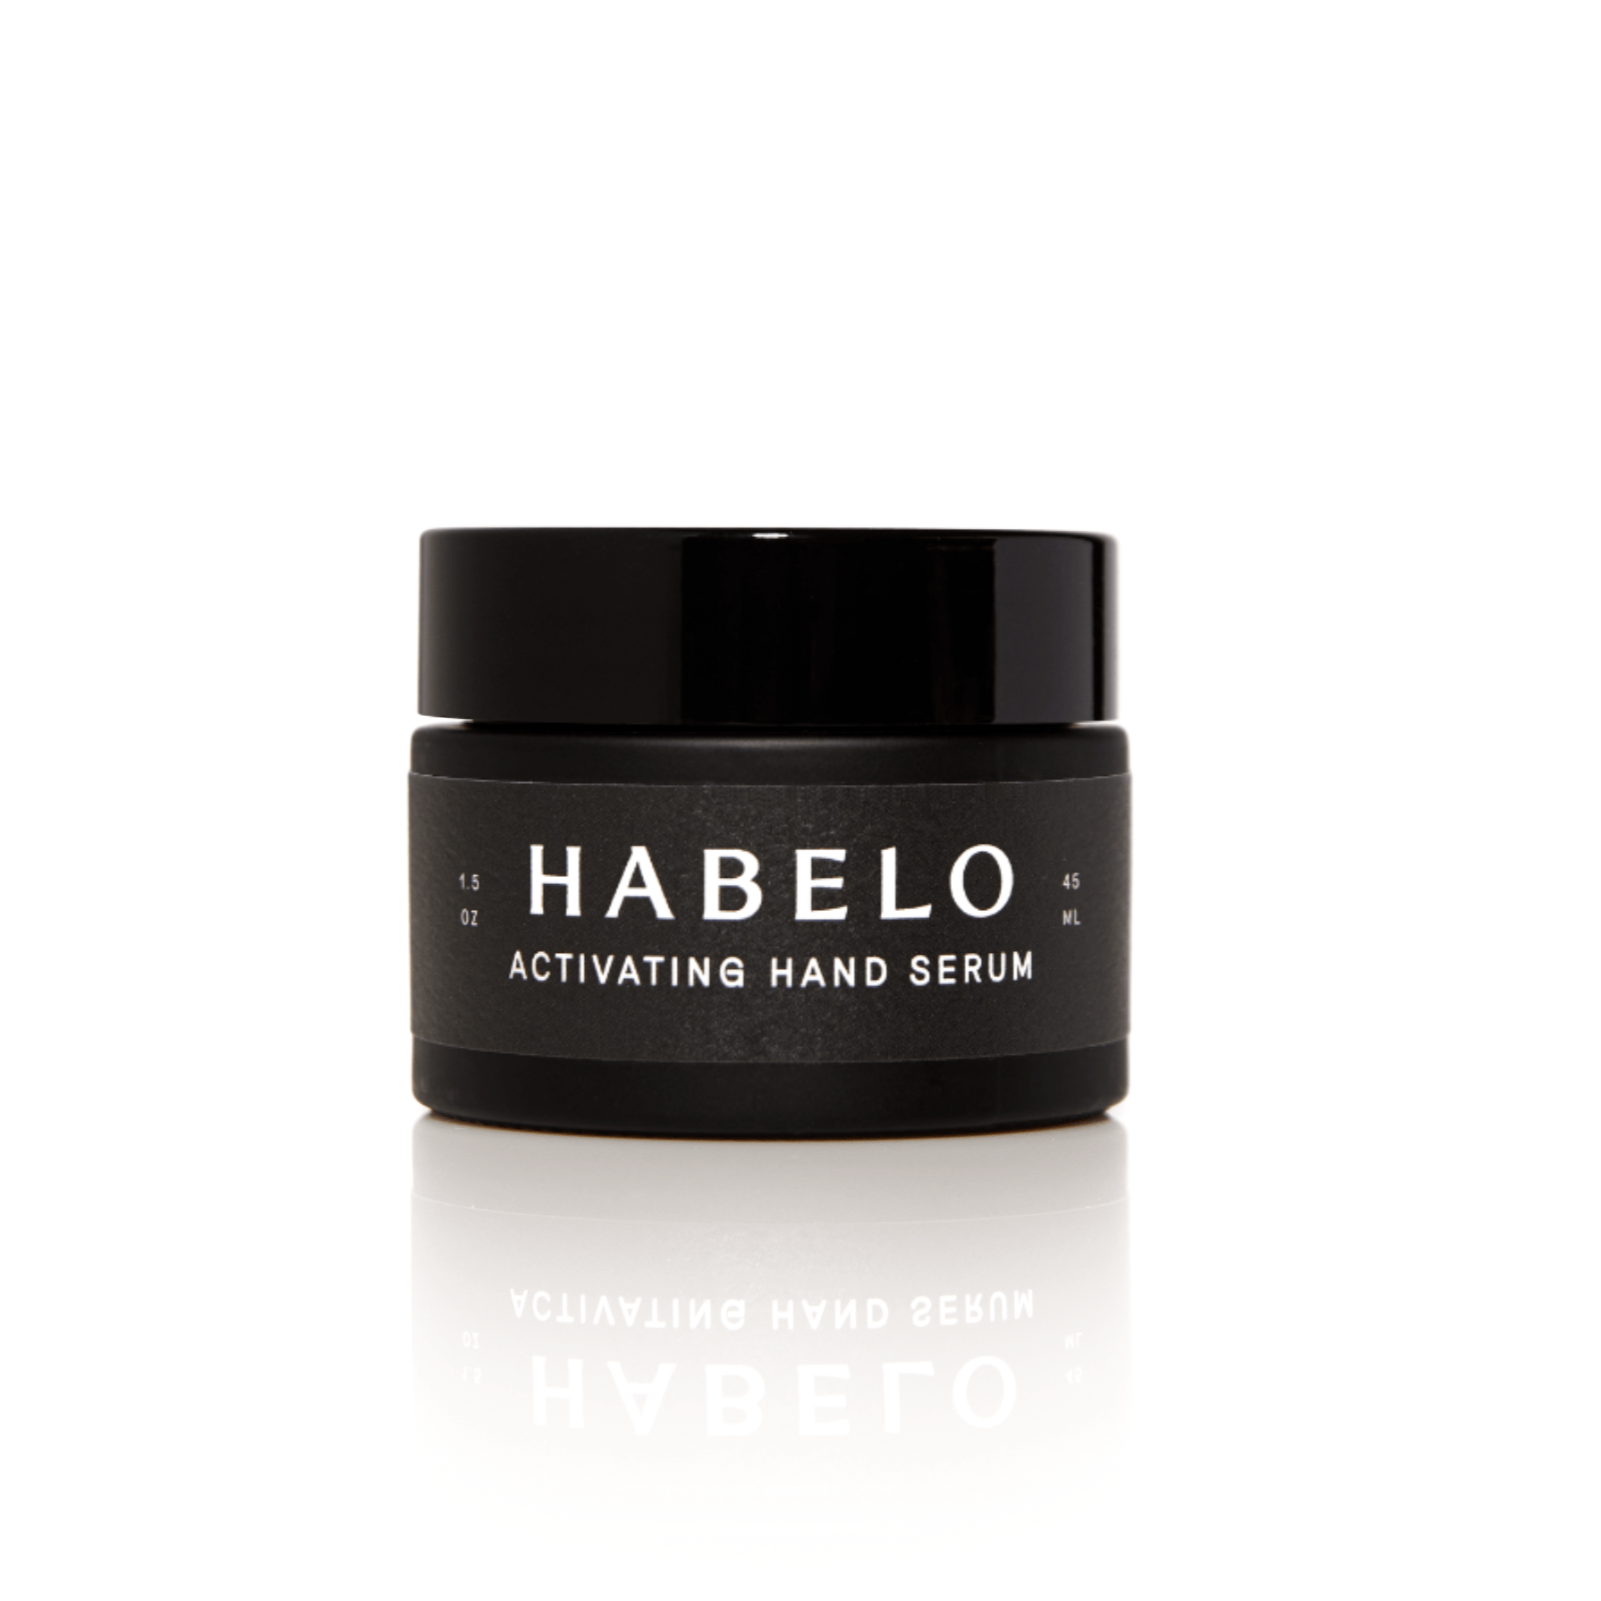 Habelo Activating Hand Serum 1.5 oz 45 ml Jar